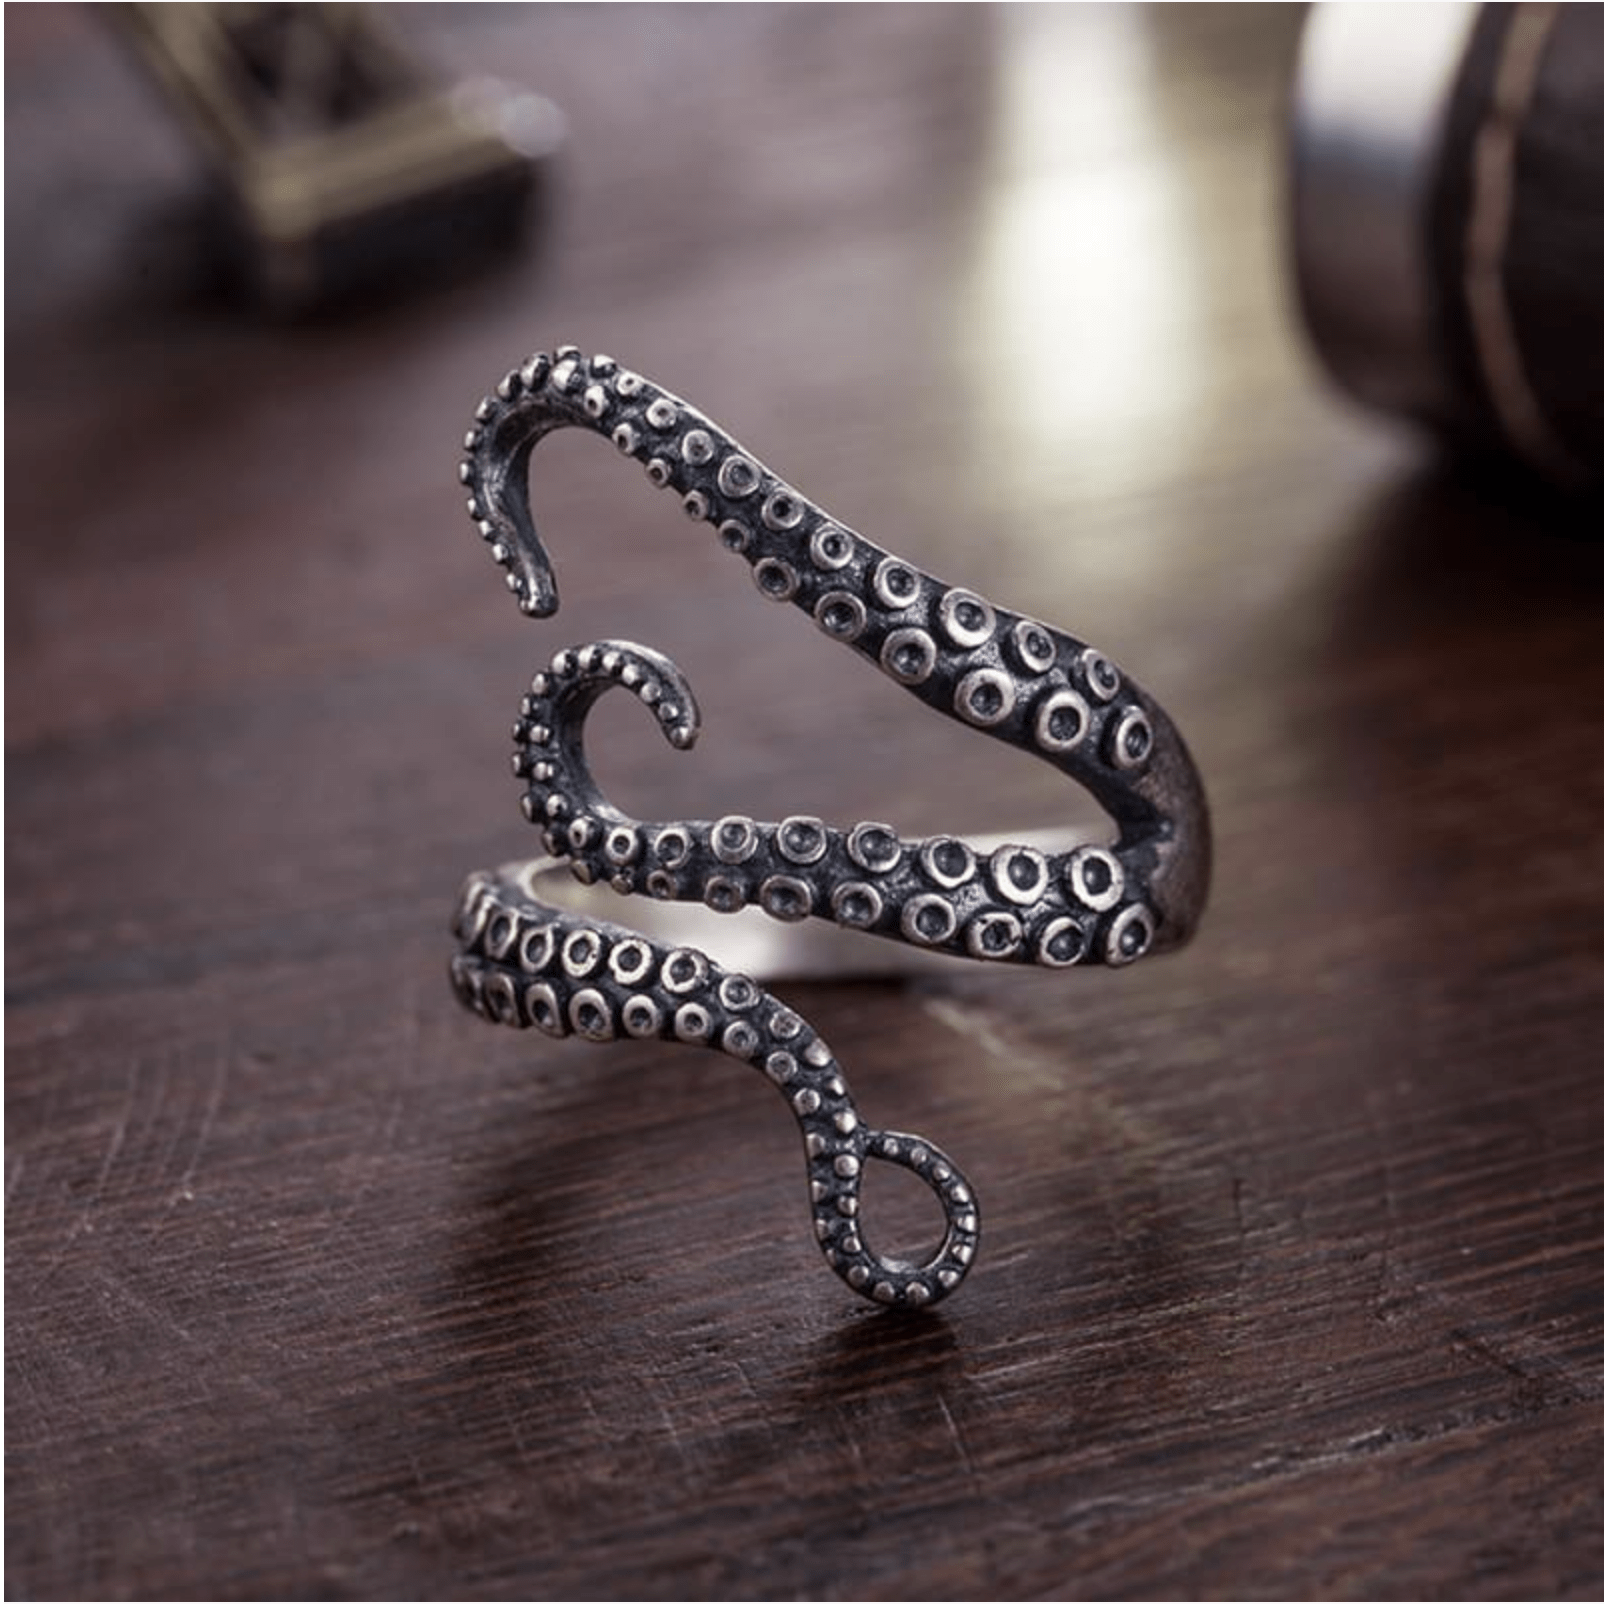 SPLASHBUY Ring - Octopus Adjustable Kraken Octopus Ring